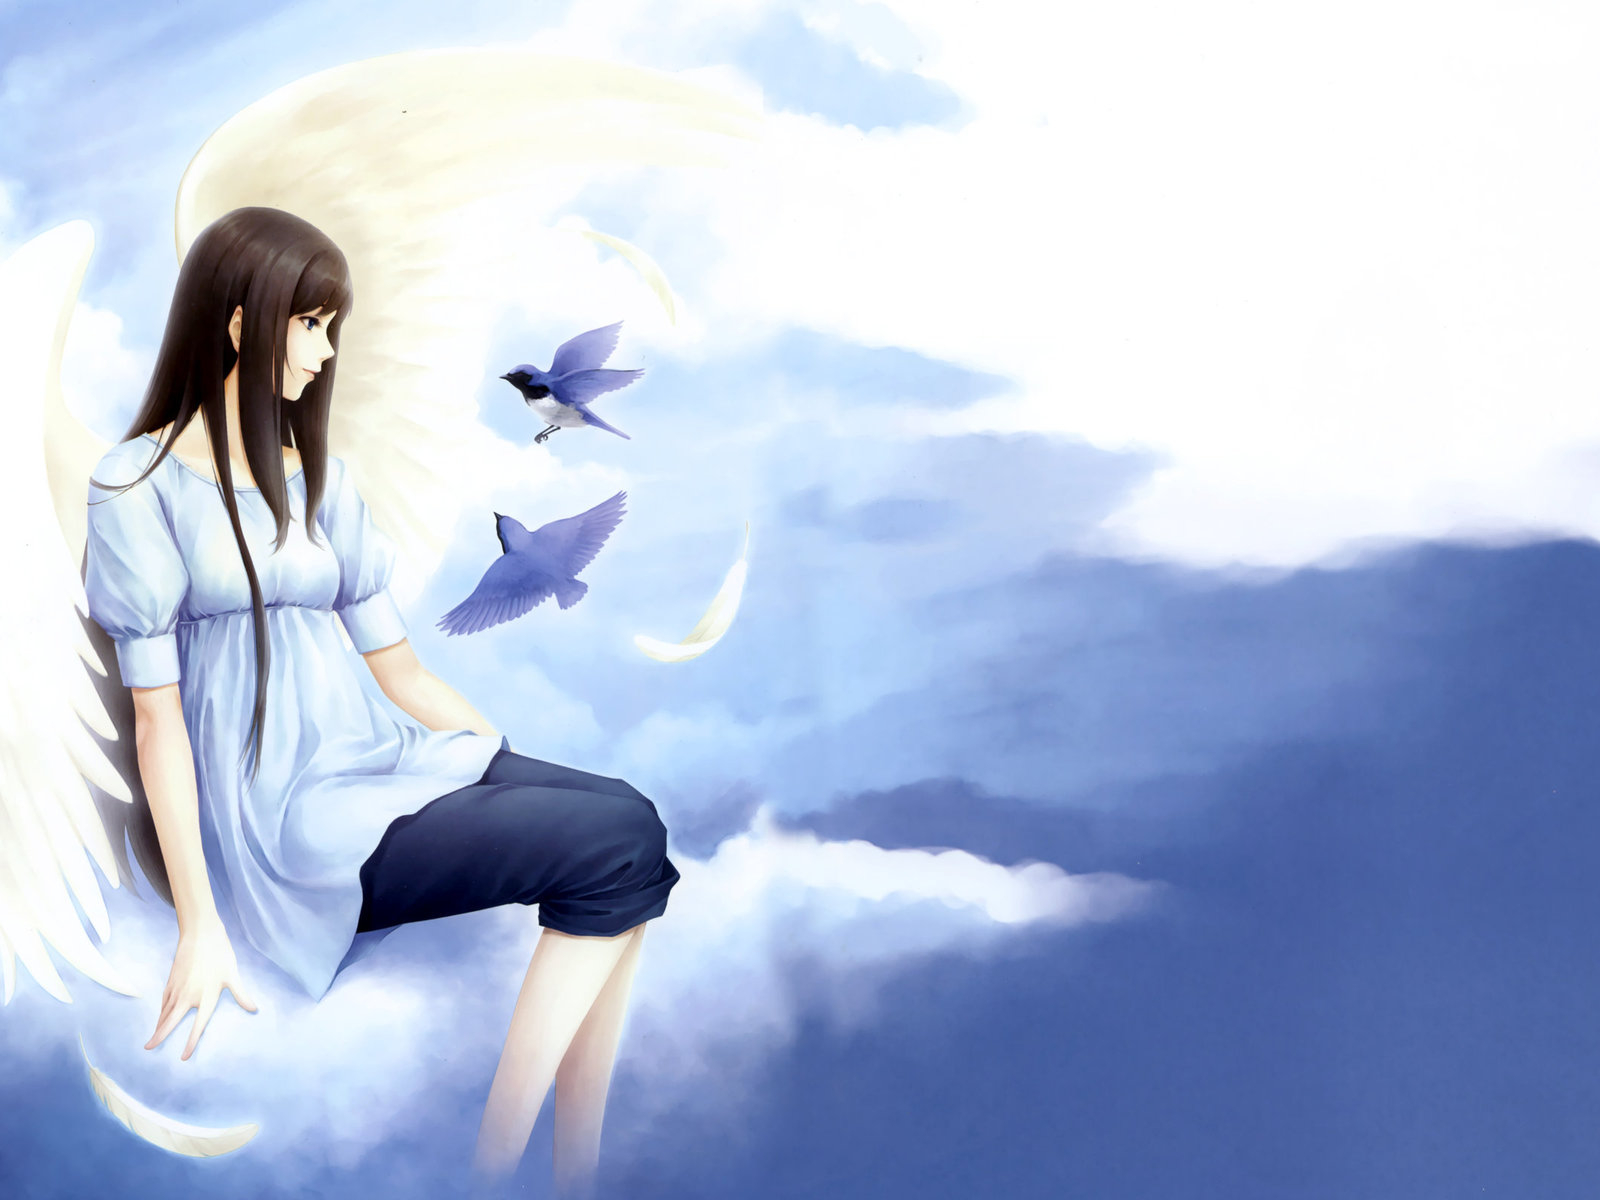 3d обои Девушка-ангел сидит на облаке, около неё летают птички  1600х1200 # 5541